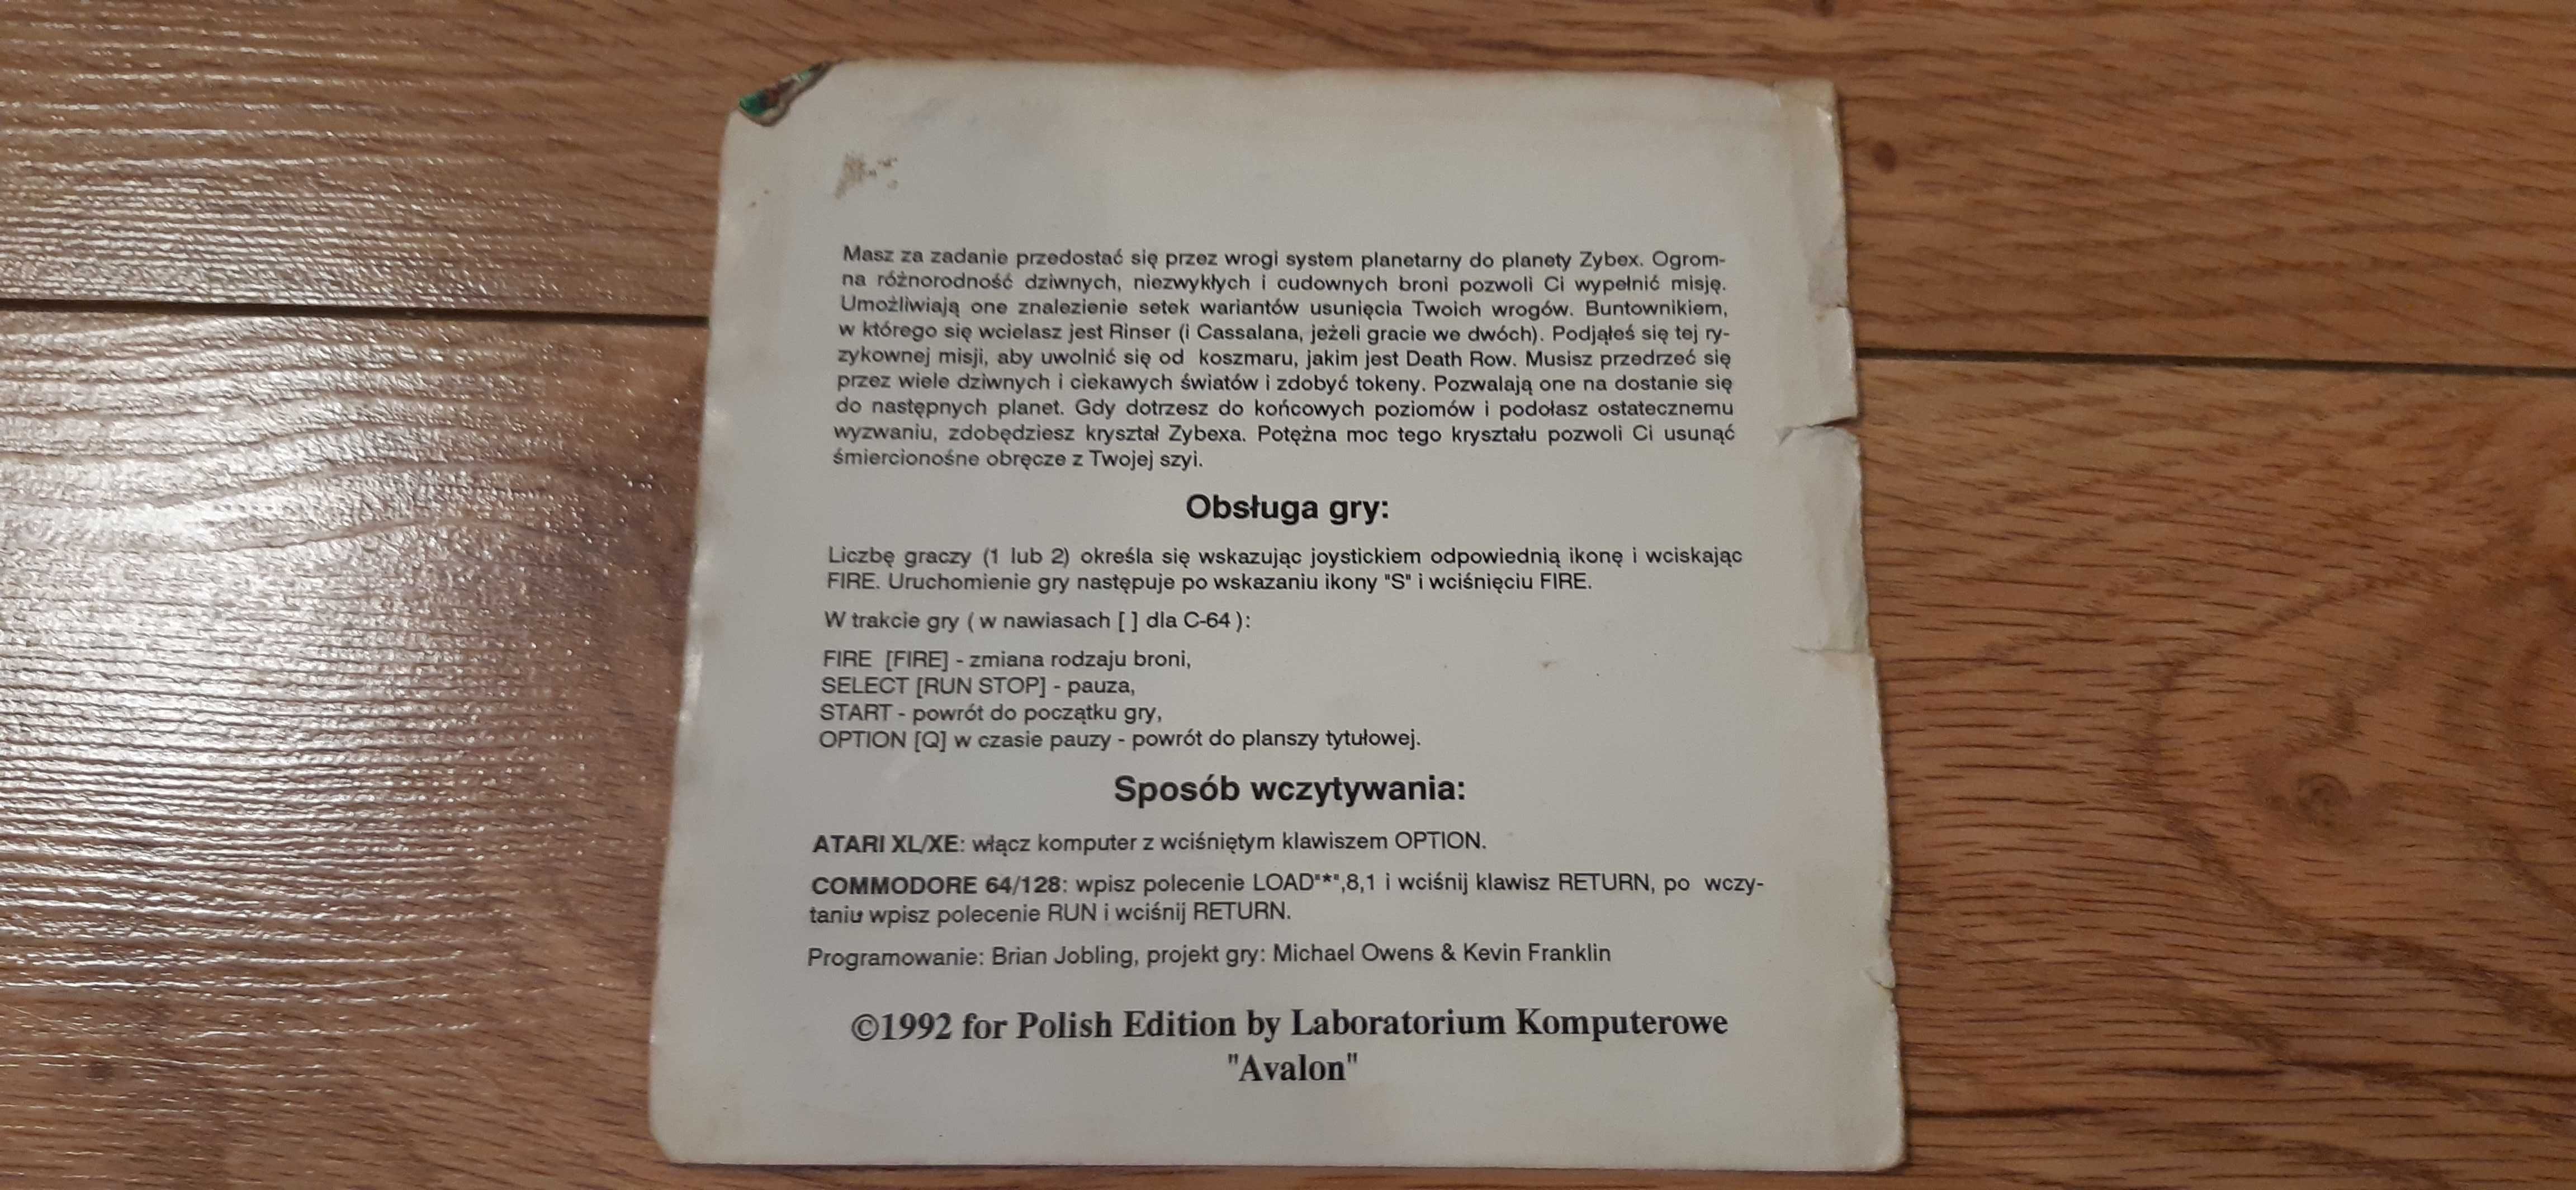 stara okładka z gry zybex lk avalon c64 c128 dla kolekcjonerów